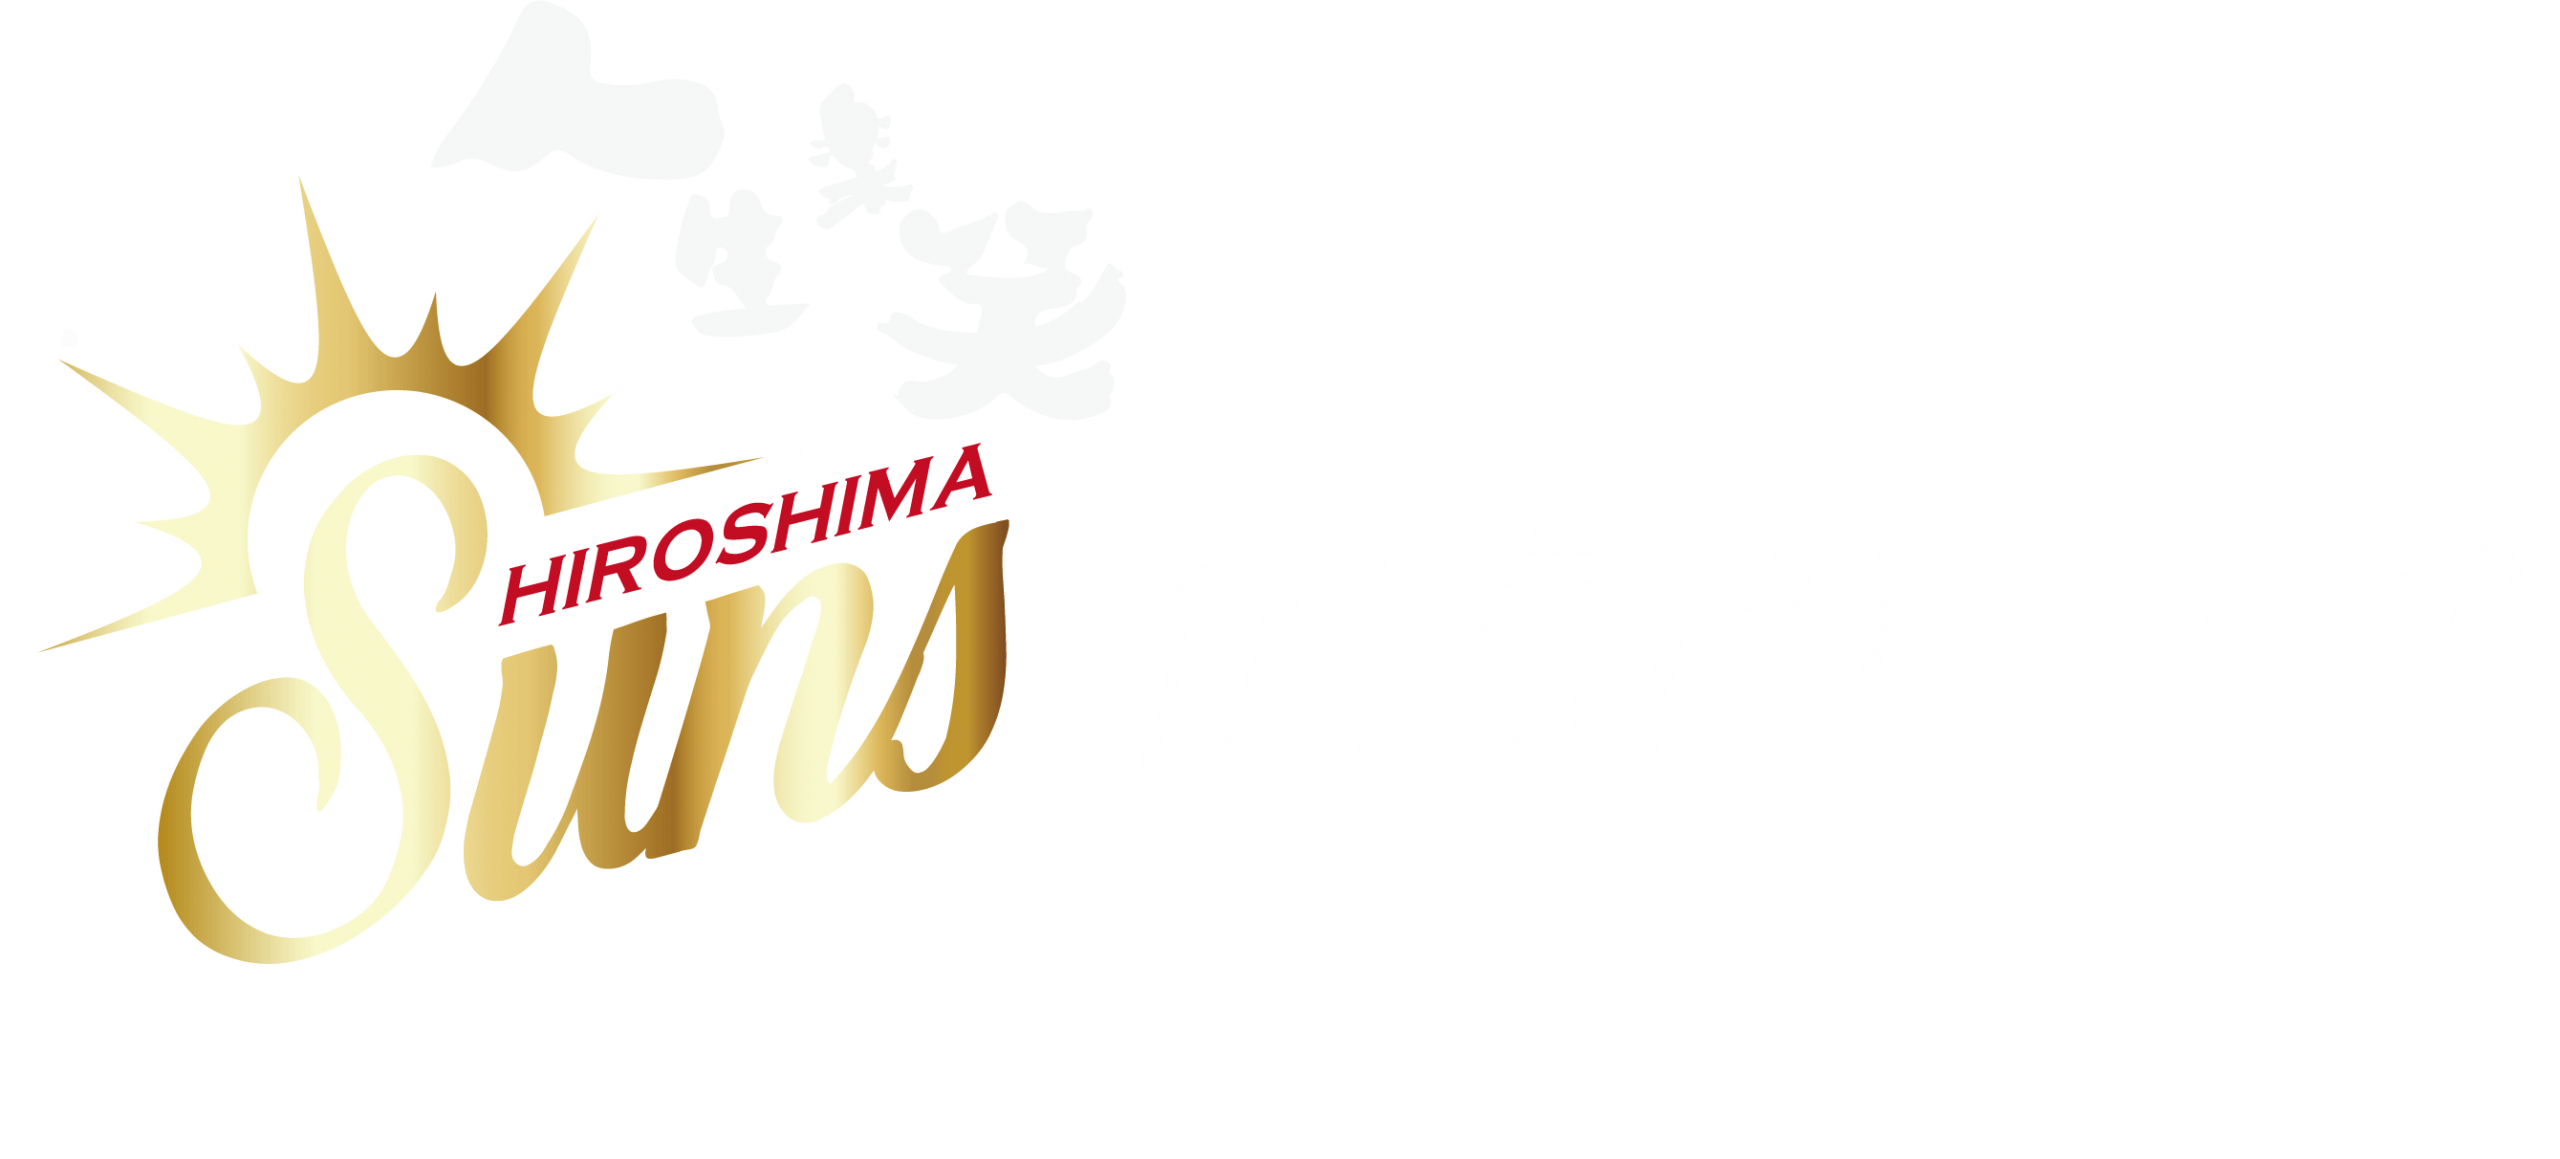 広島サンズー Official Web Site ー